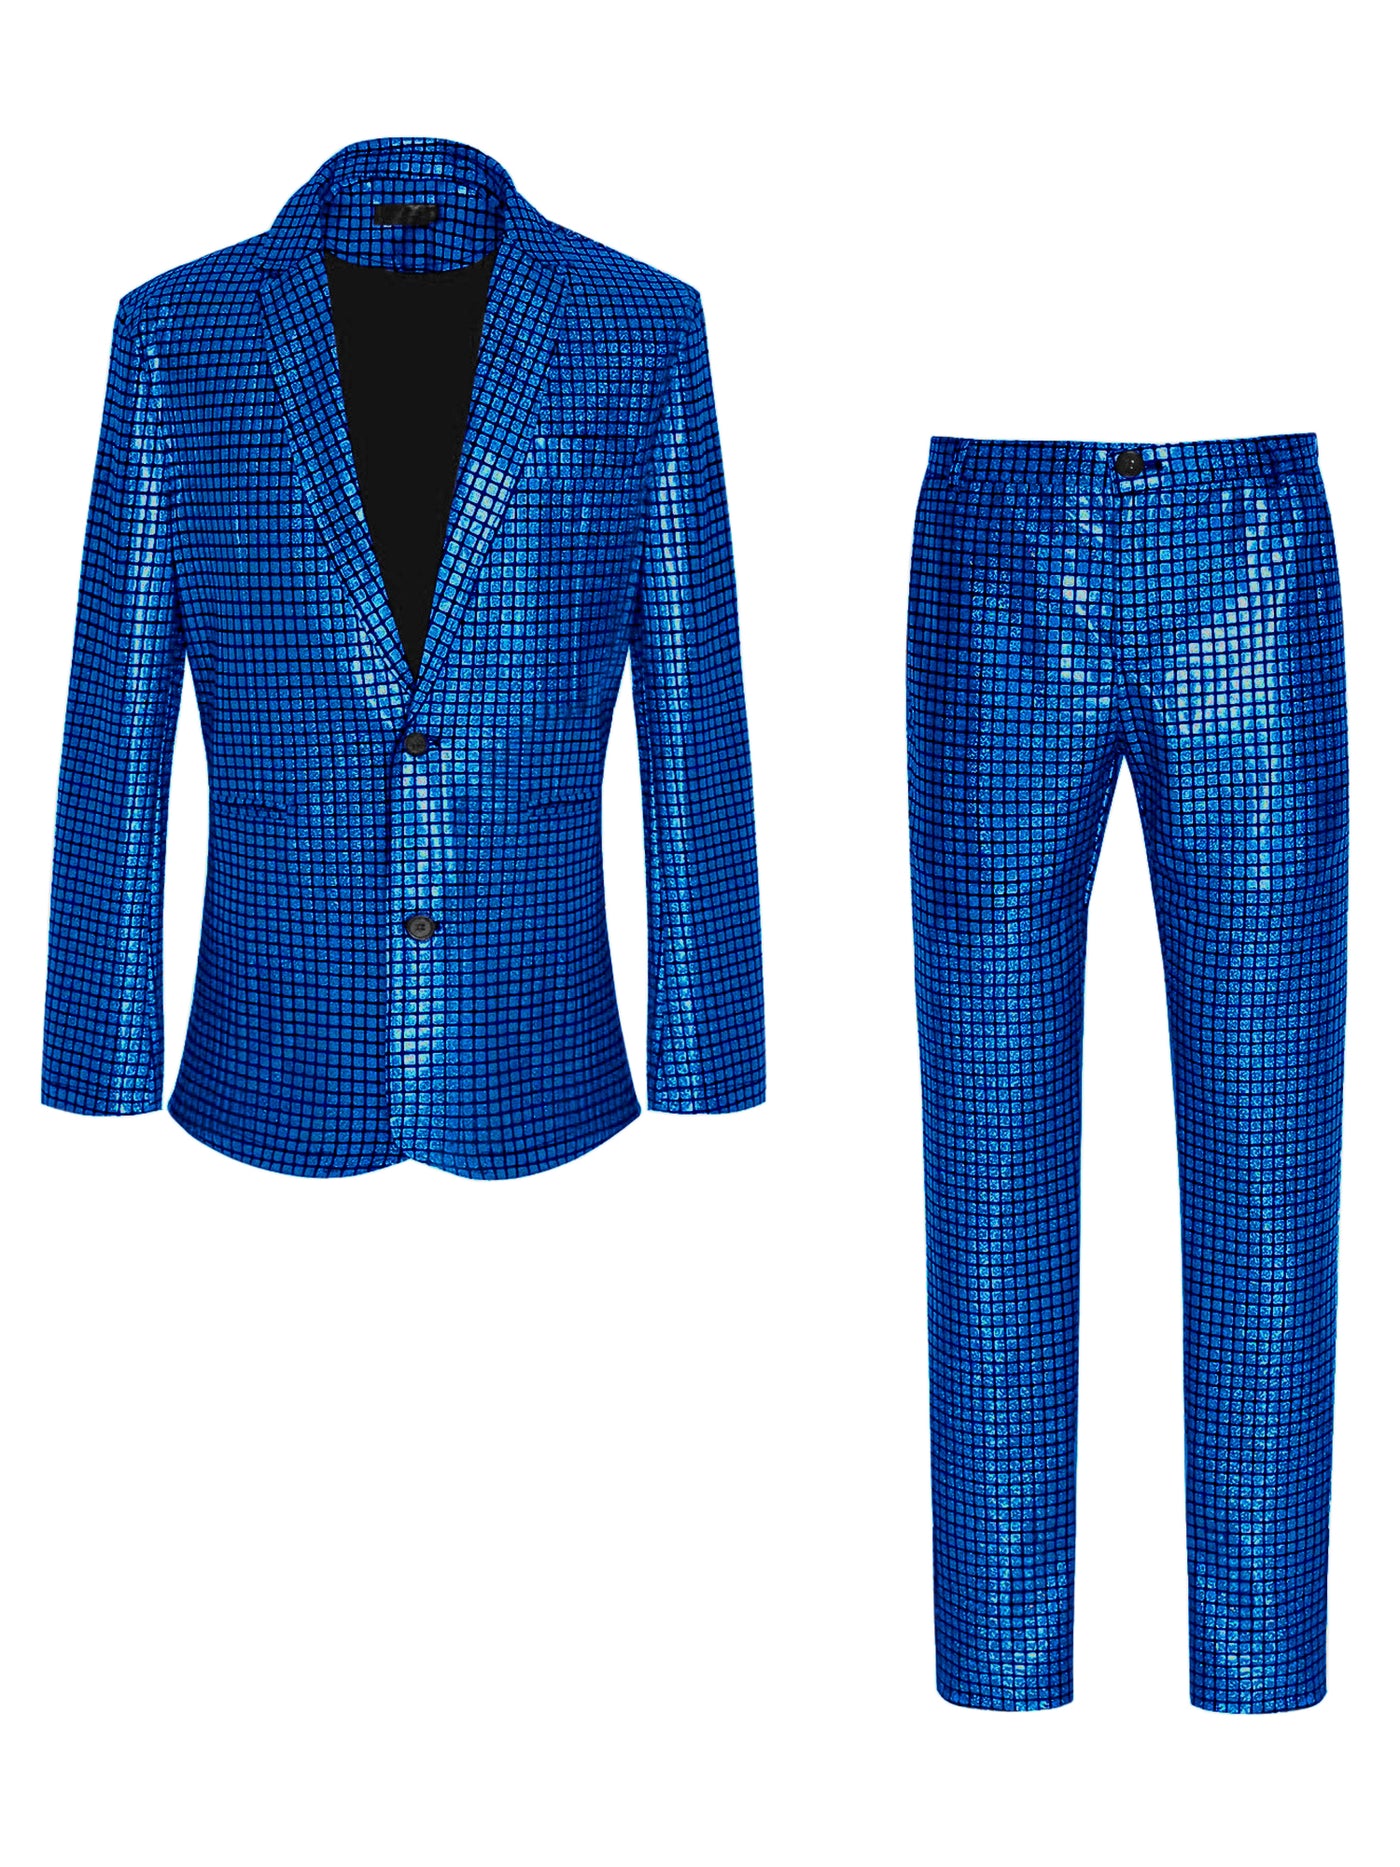 Bublédon Metallic Sequin Blazer and Pants Party Two Pieces Suit Set